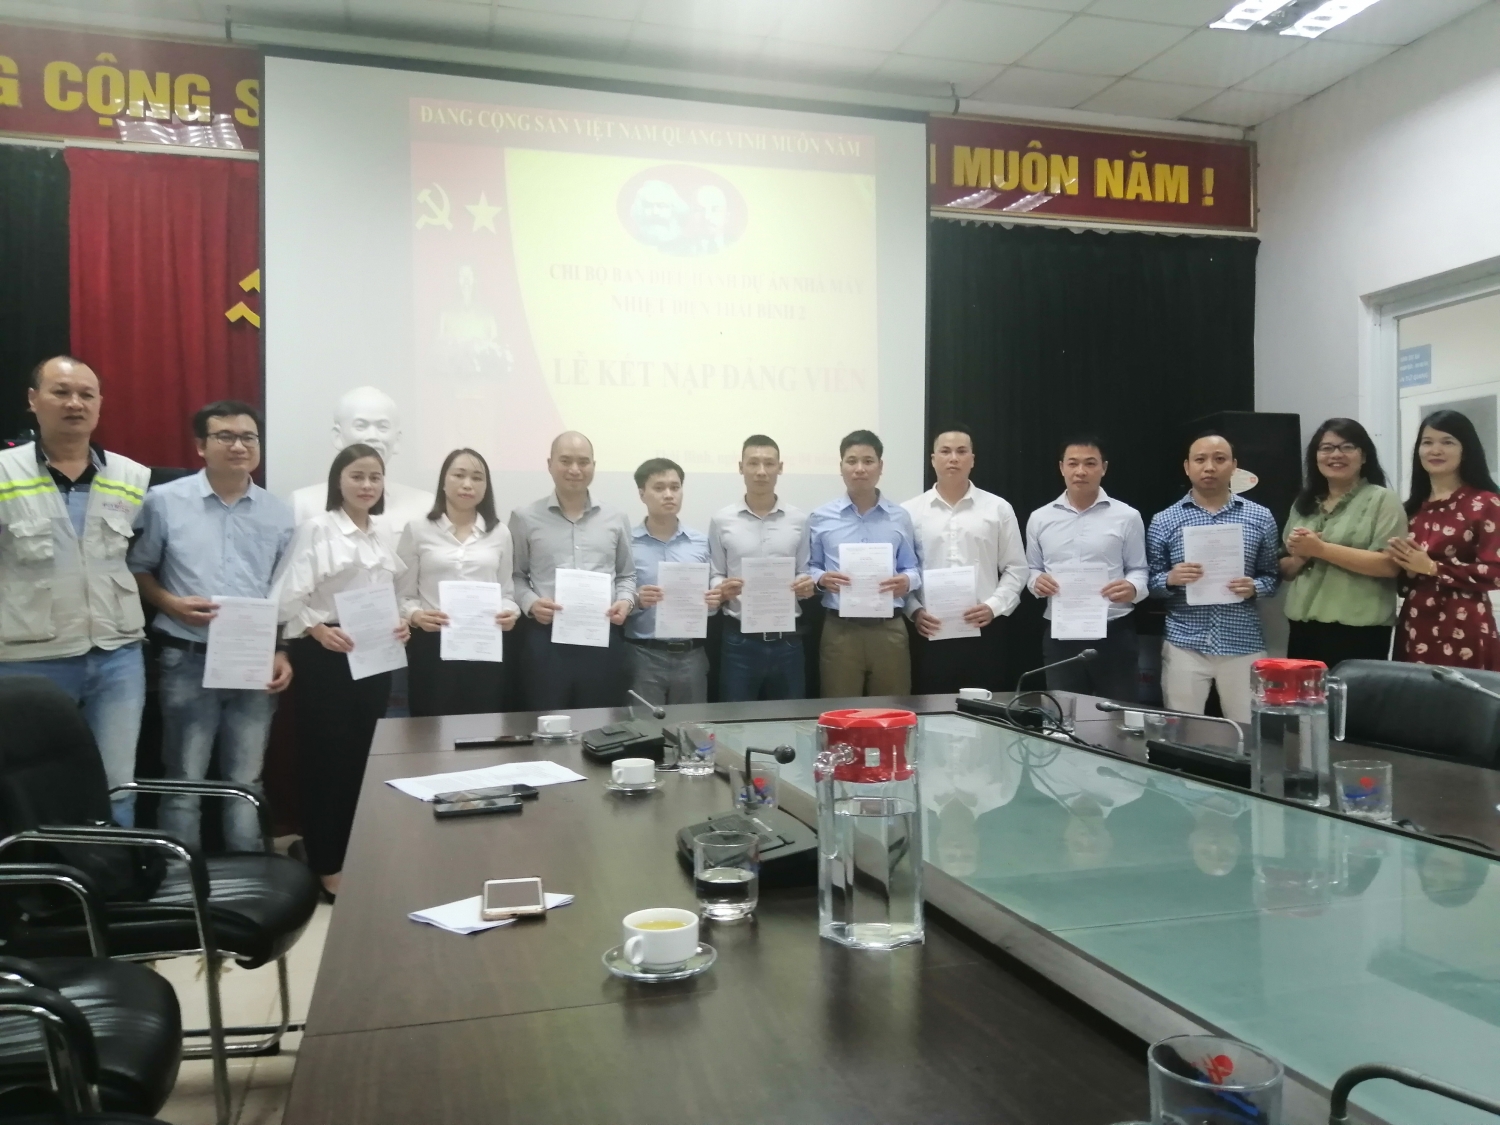 Đảng ủy PETROCONs tổ chức kết nạp Đảng và trao thẻ đảng viên trên công trường NMNĐ Thái Bình 2